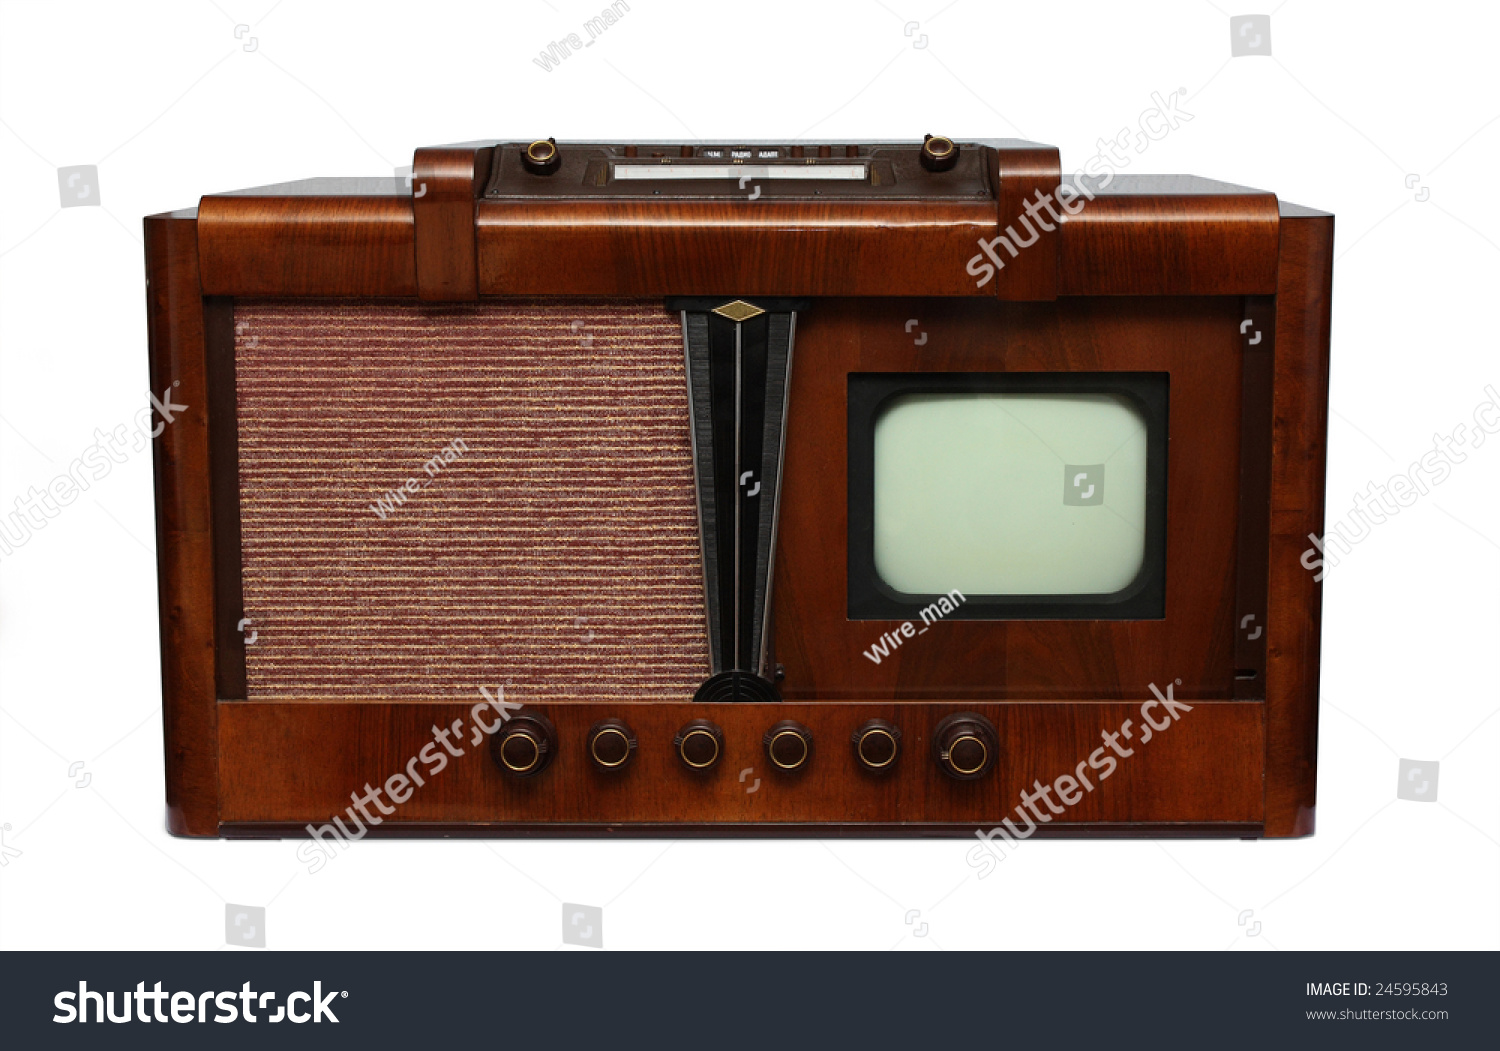 1 телевизор в мире. Первый телевизор. Телевизор 1930 года. Механический телевизор. Самый первый телевизор.